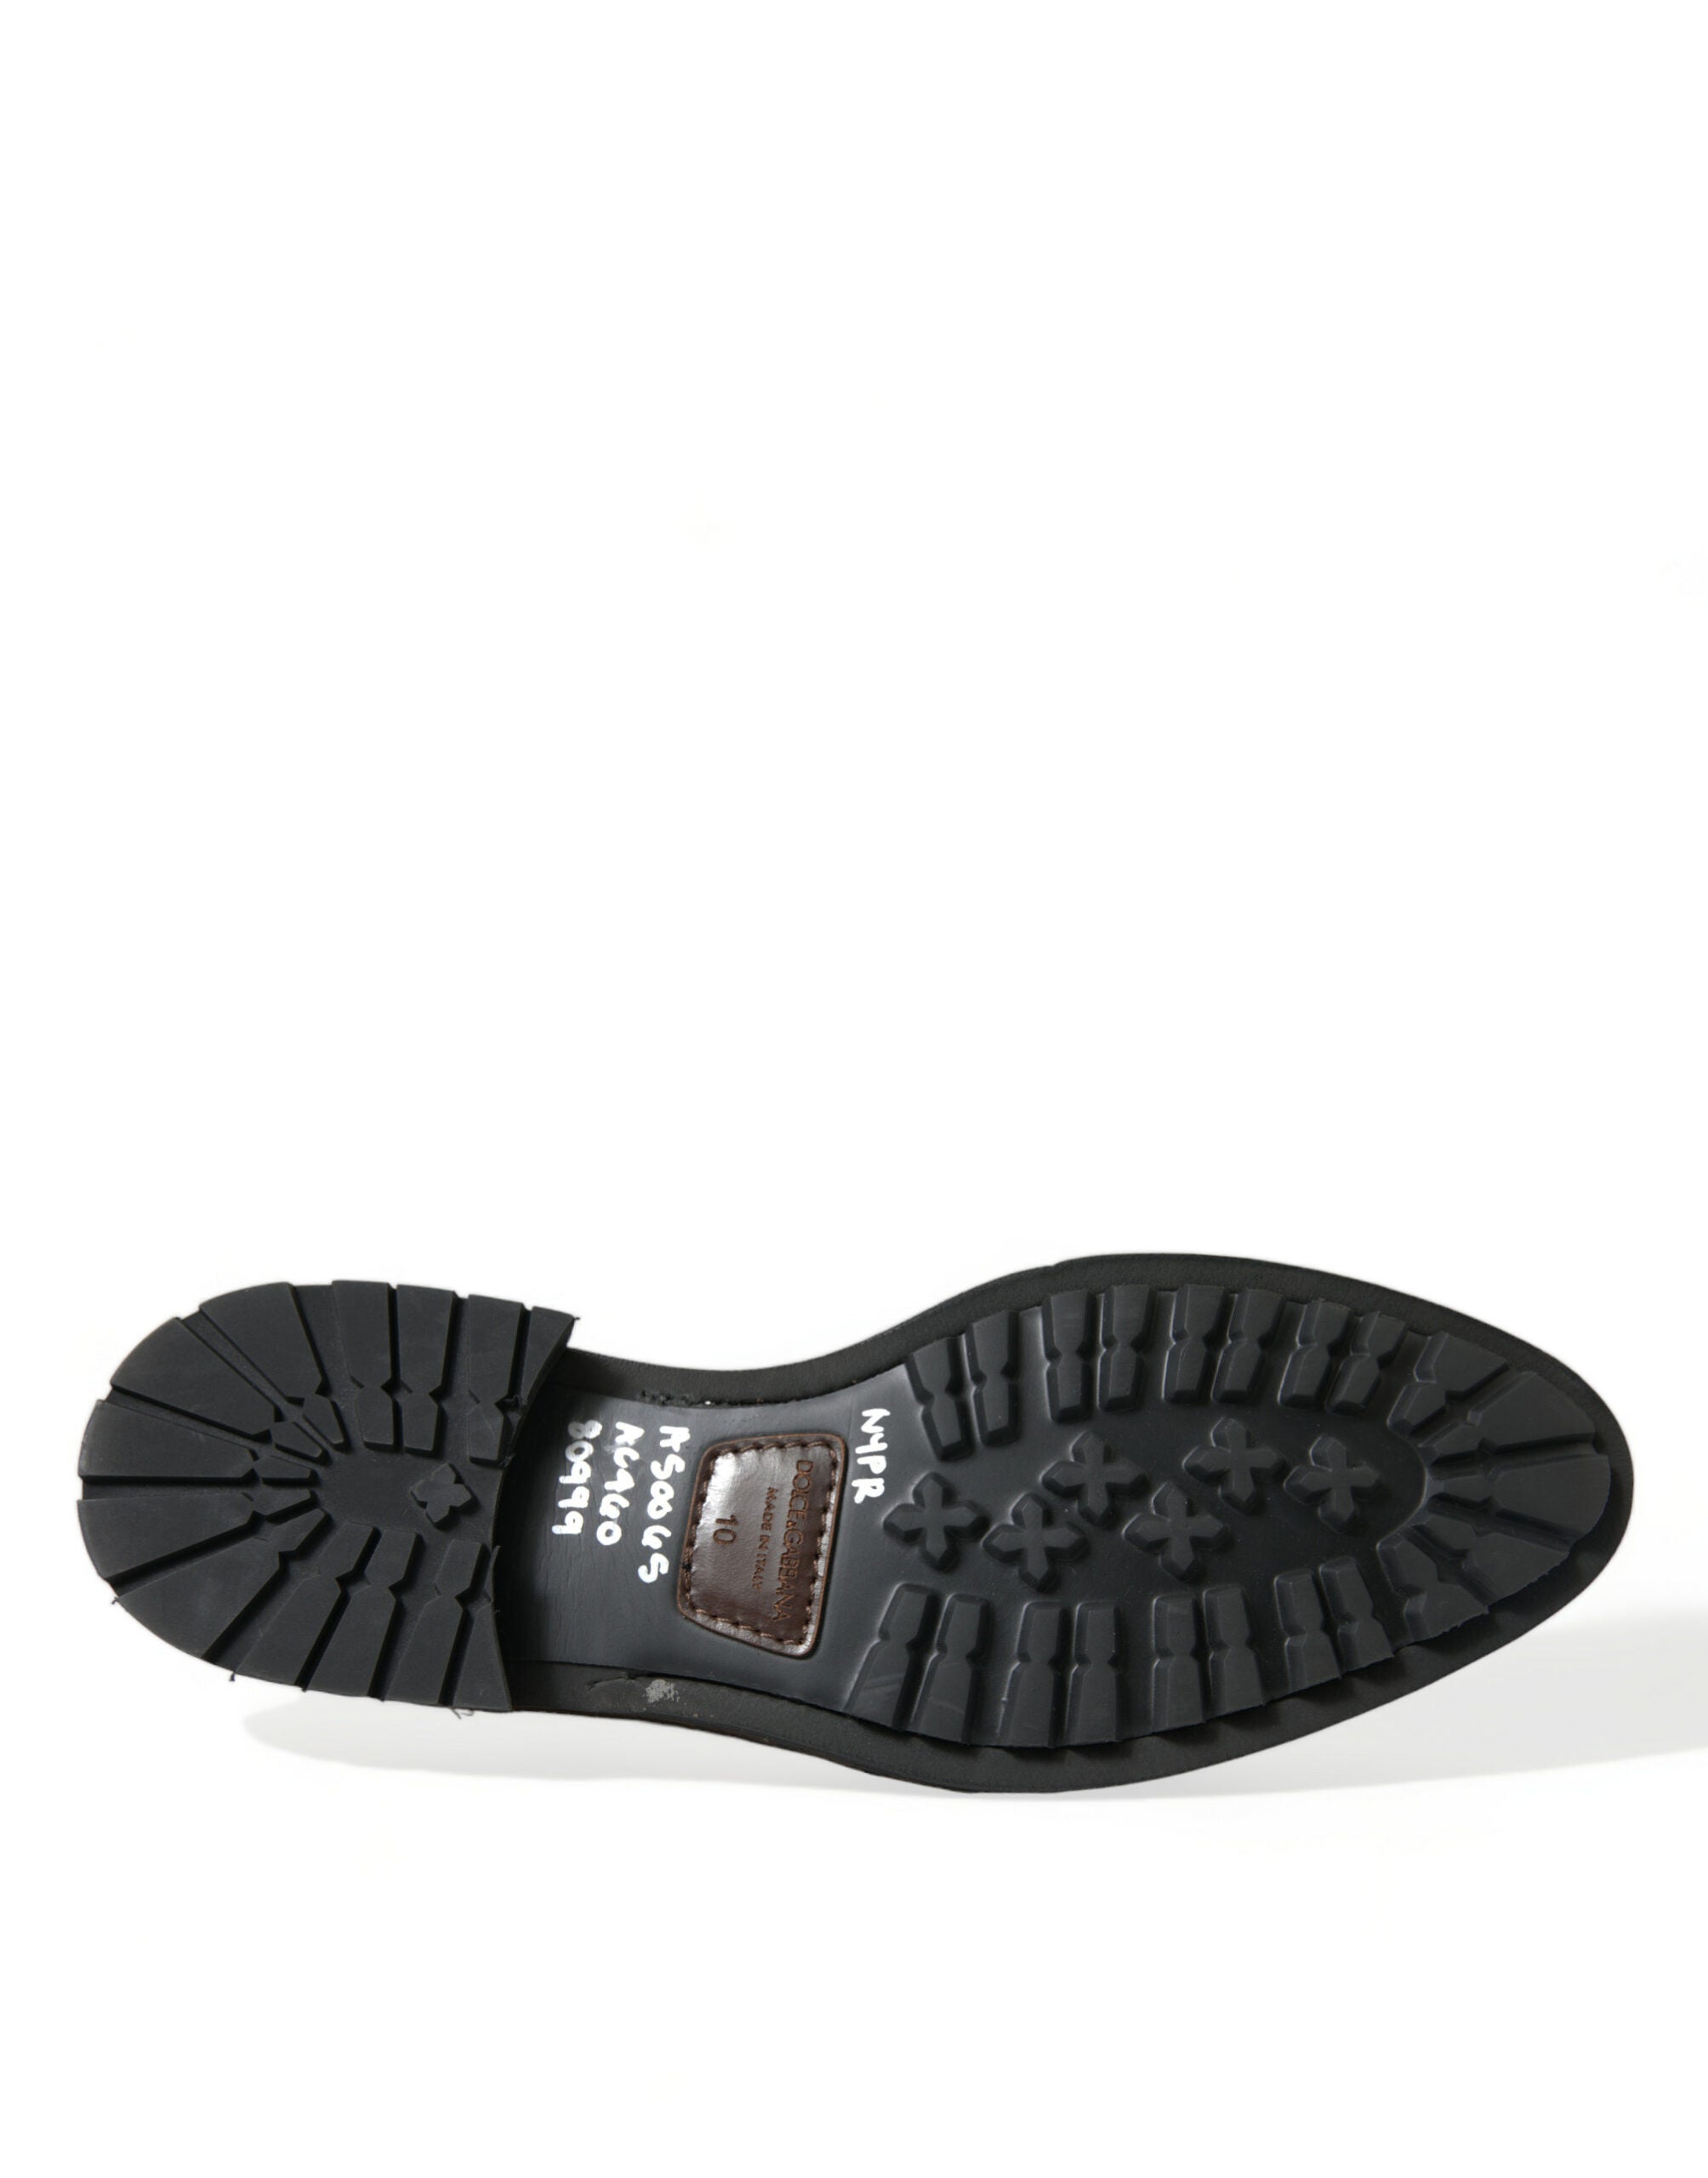 Dolce & Gabbana Zapatos de vestir mocasines de cuero negro con tachuelas